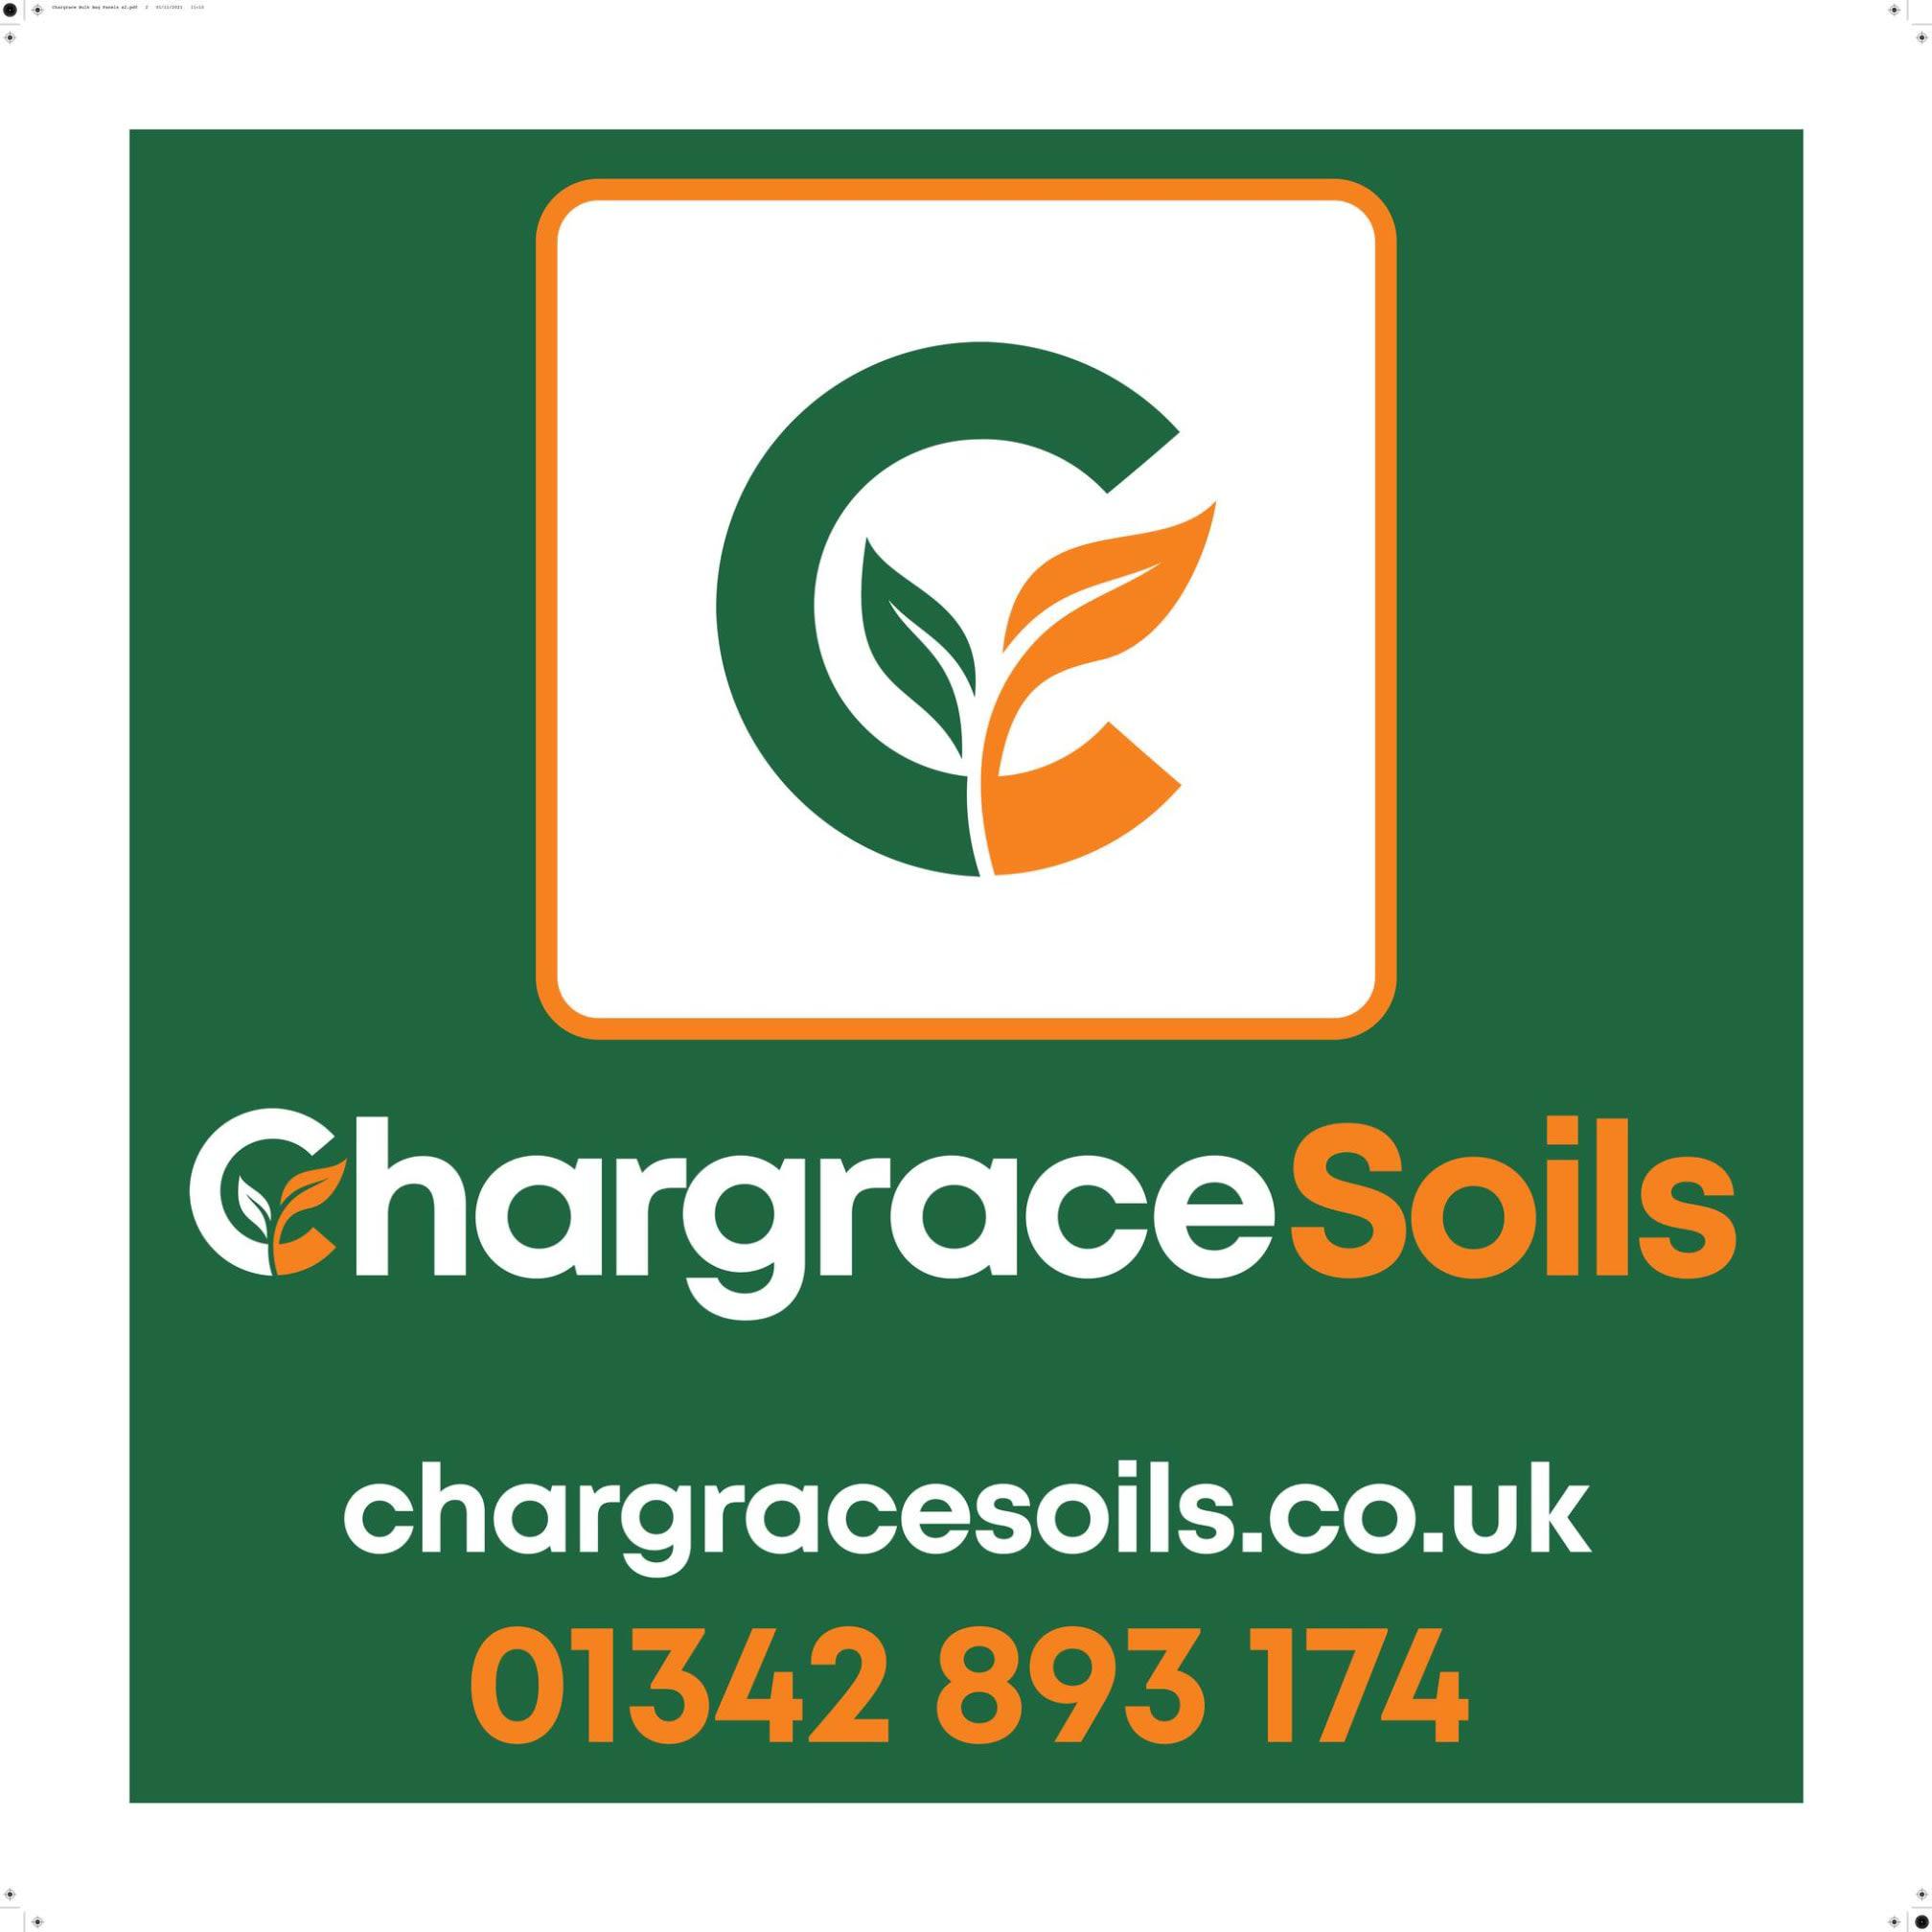 Images Chargrace Soils Ltd